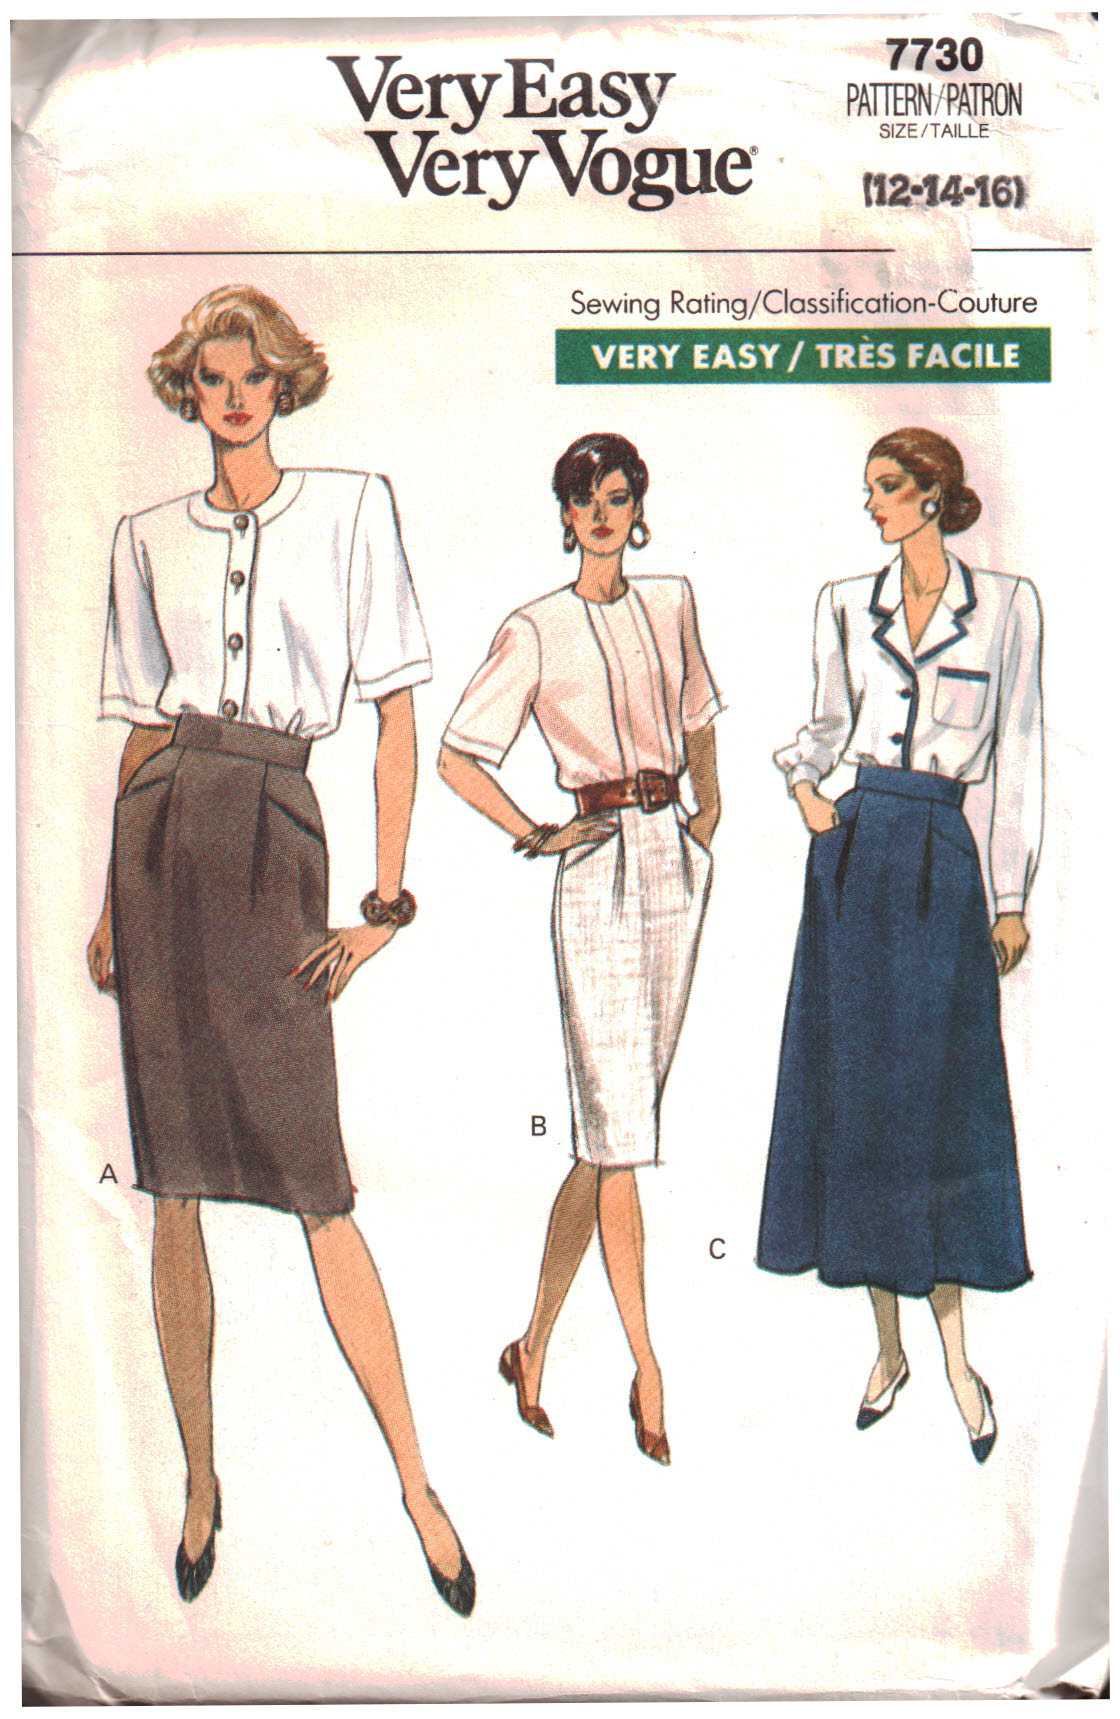 Vogue 7730 Misses' Skirt Size: 12-14-16 Uncut Sewing Pattern